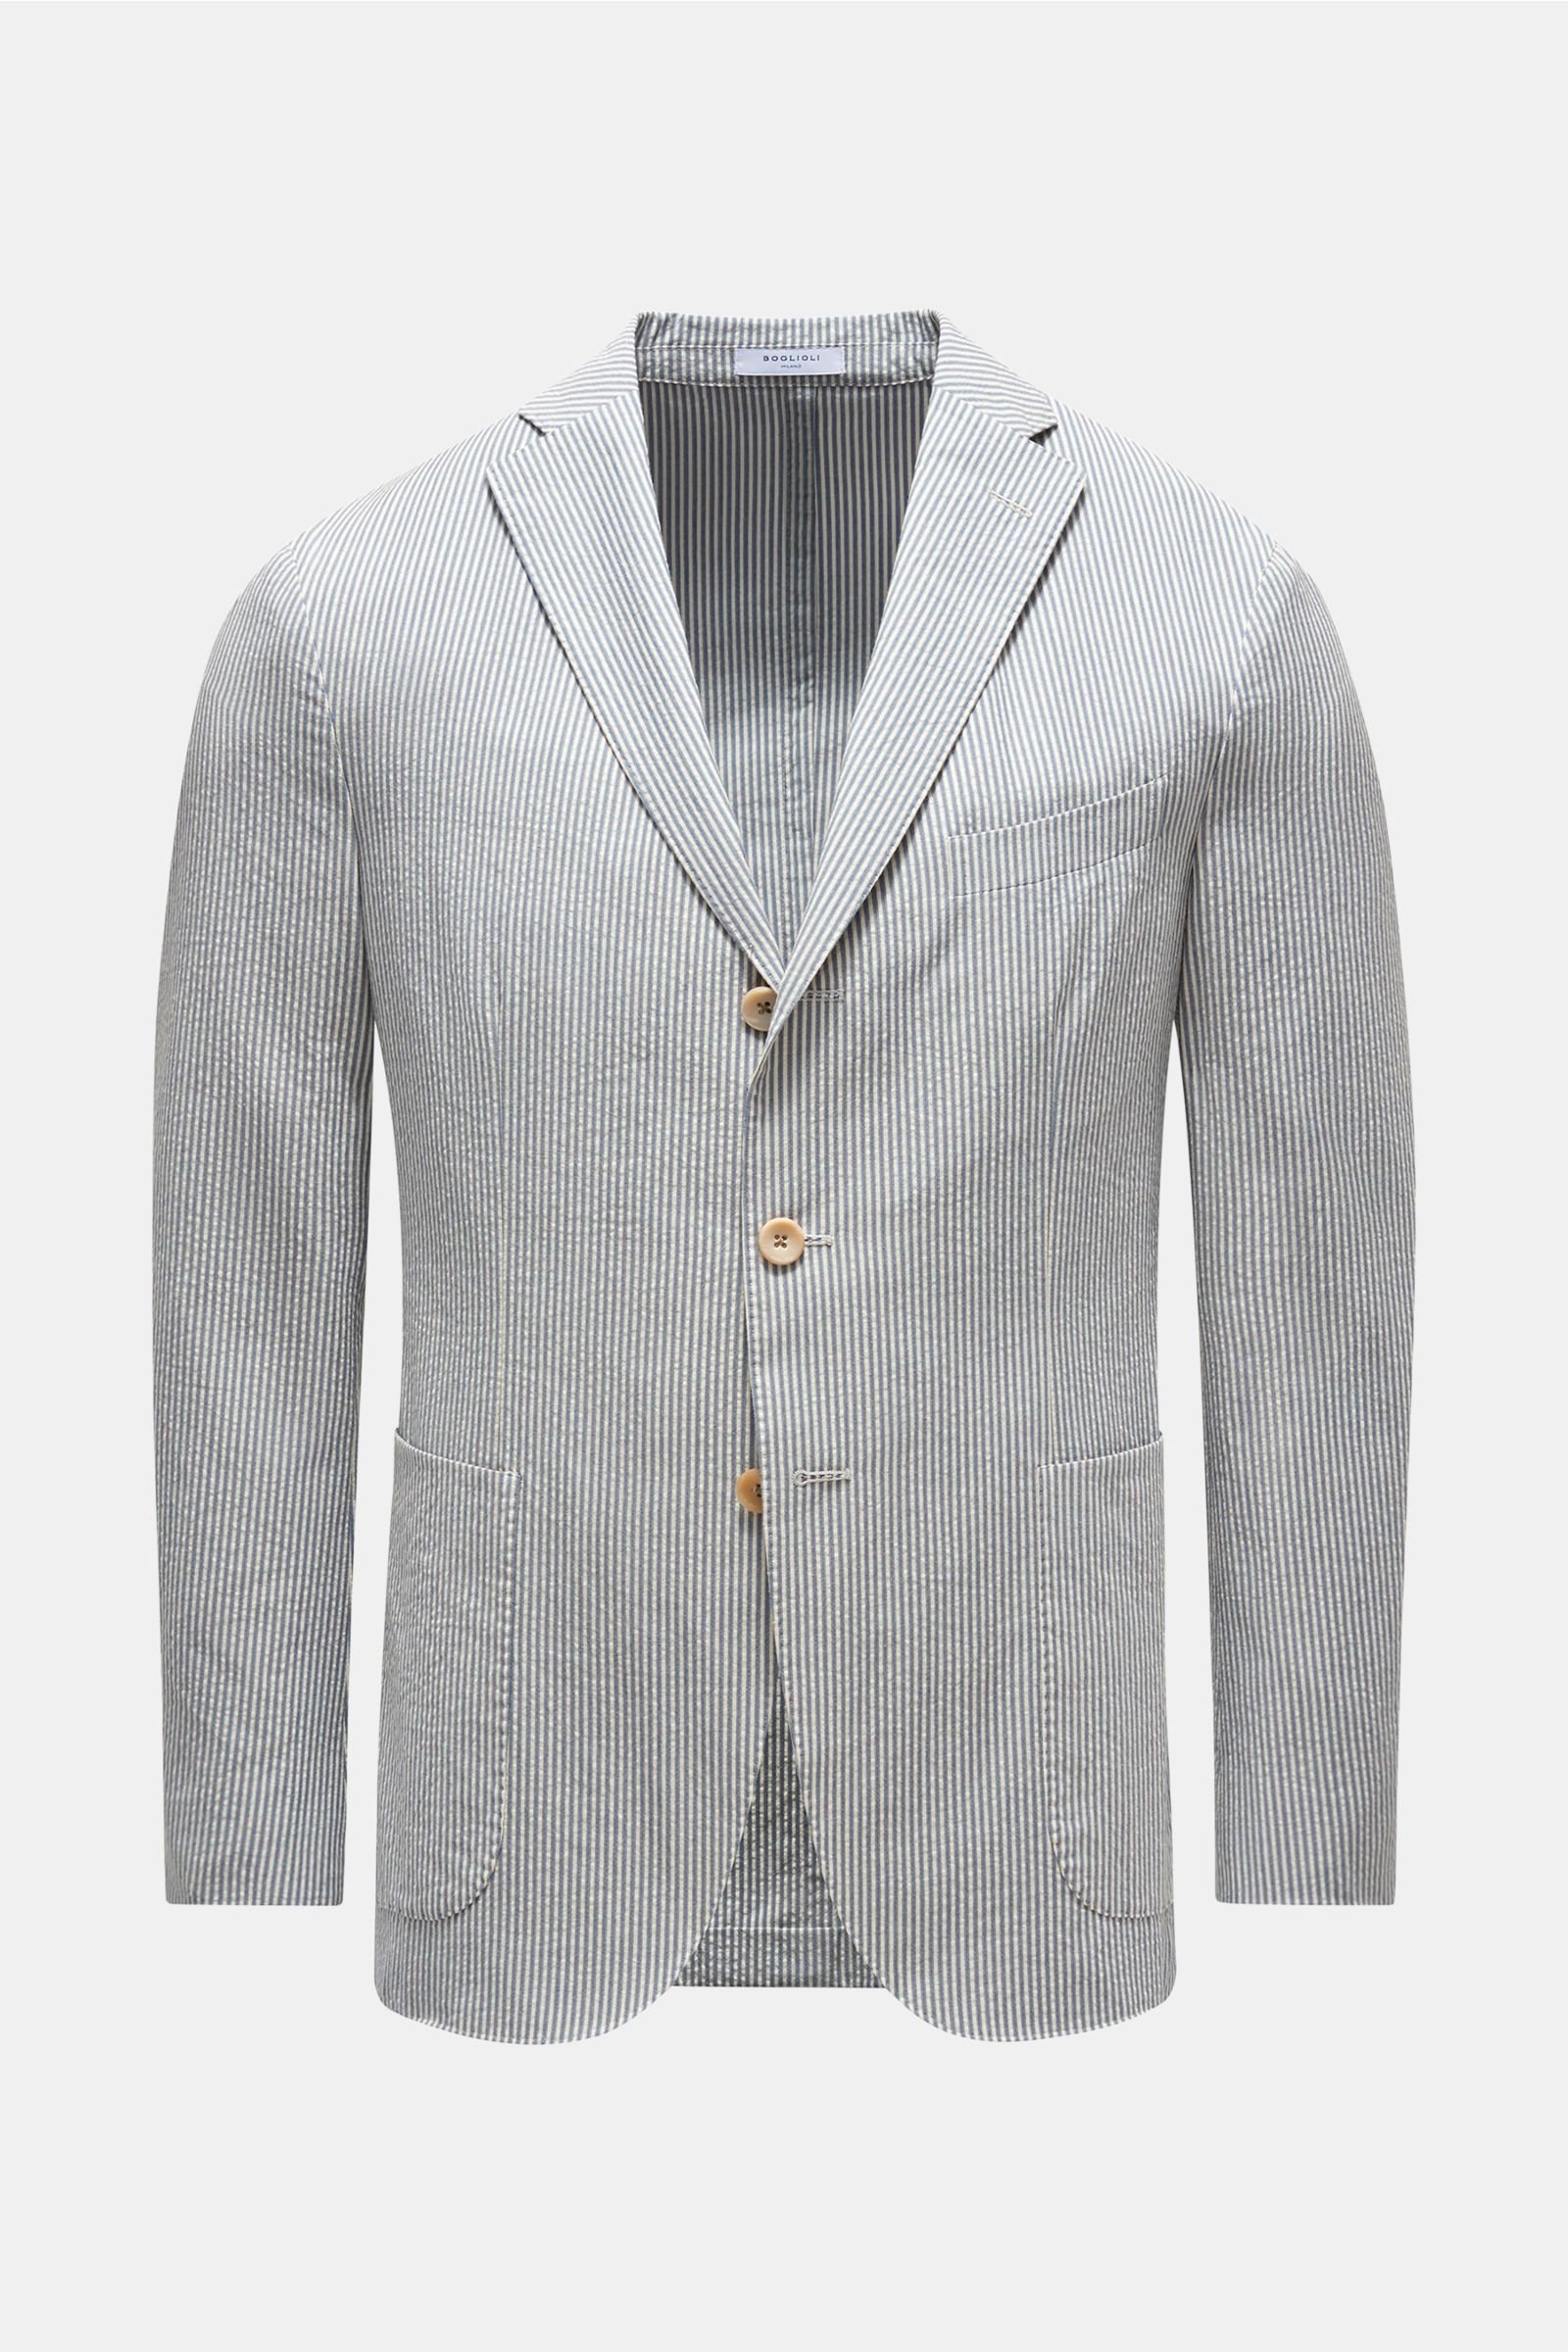 Seersucker smart-casual jacket in grey-blue/off-white striped